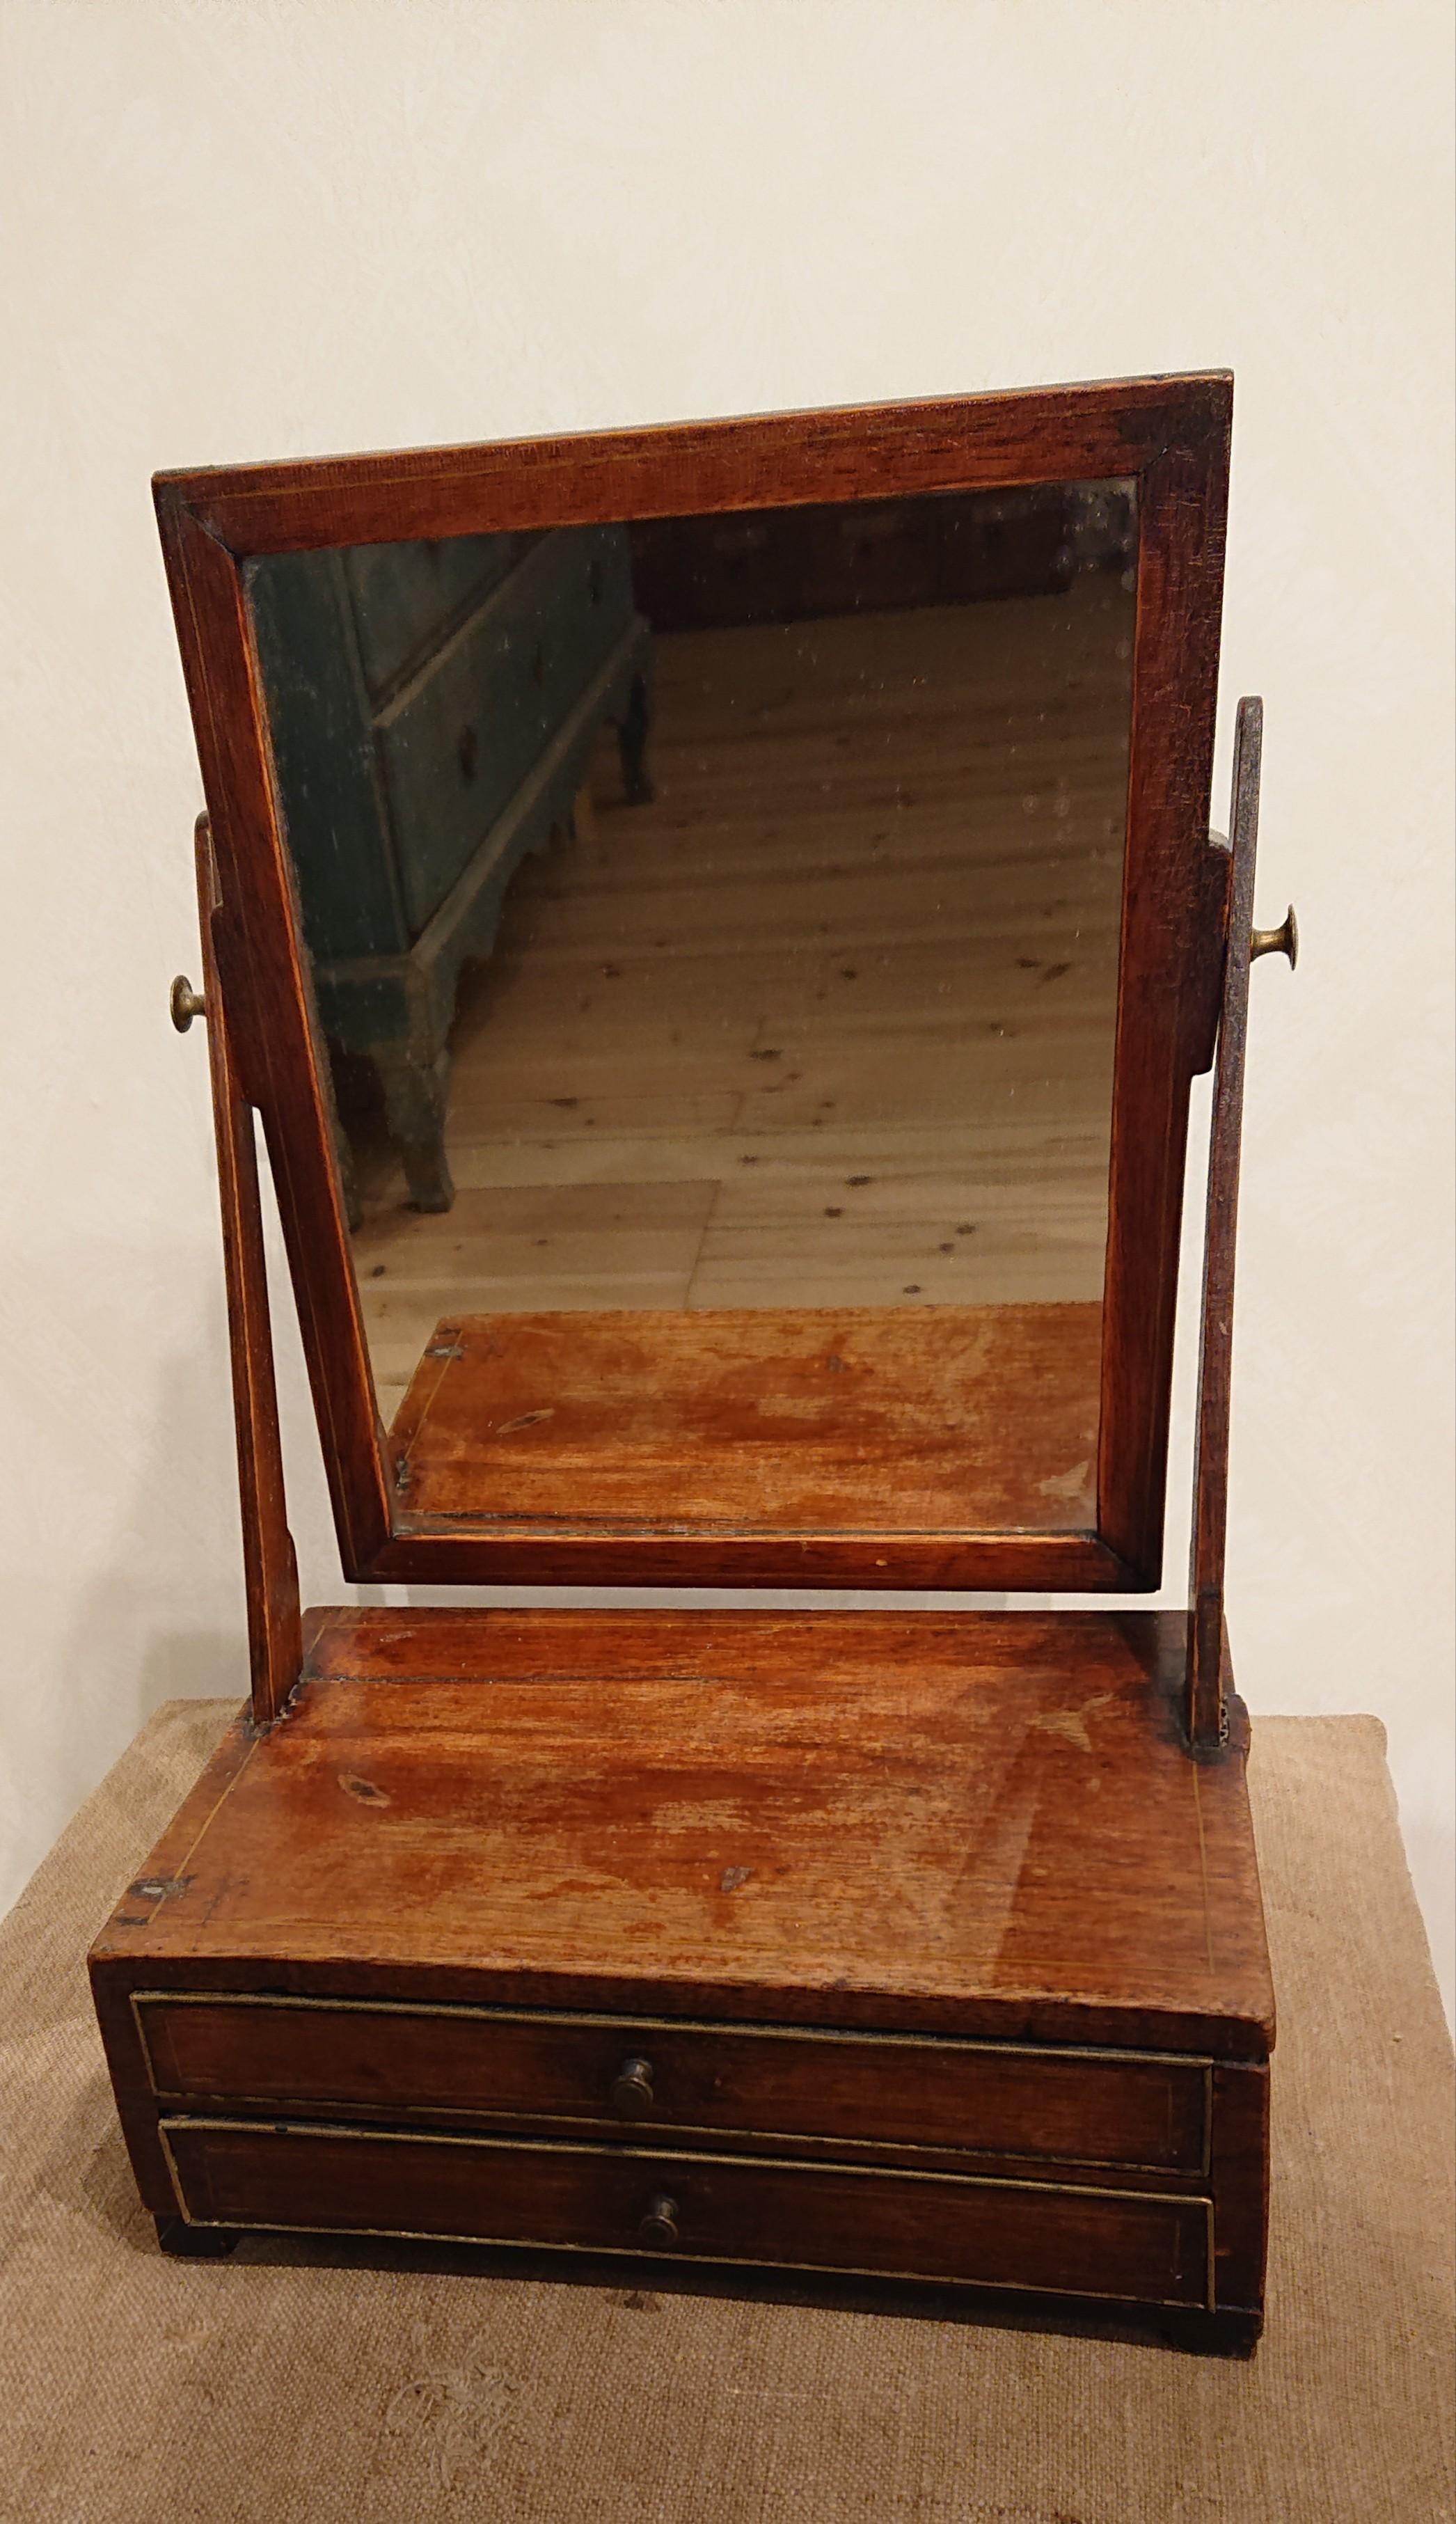 Schwedischer Gustavianischer Mahagoni-Tischspiegel aus dem 18. Jahrhundert.
Dies ist ein Spiegel voller Alter und Charme mit großartigen Proportionen.
Ein seltener Fund, der an der richtigen Stelle fantastisch aussehen würde.
Der Schwenkspiegel